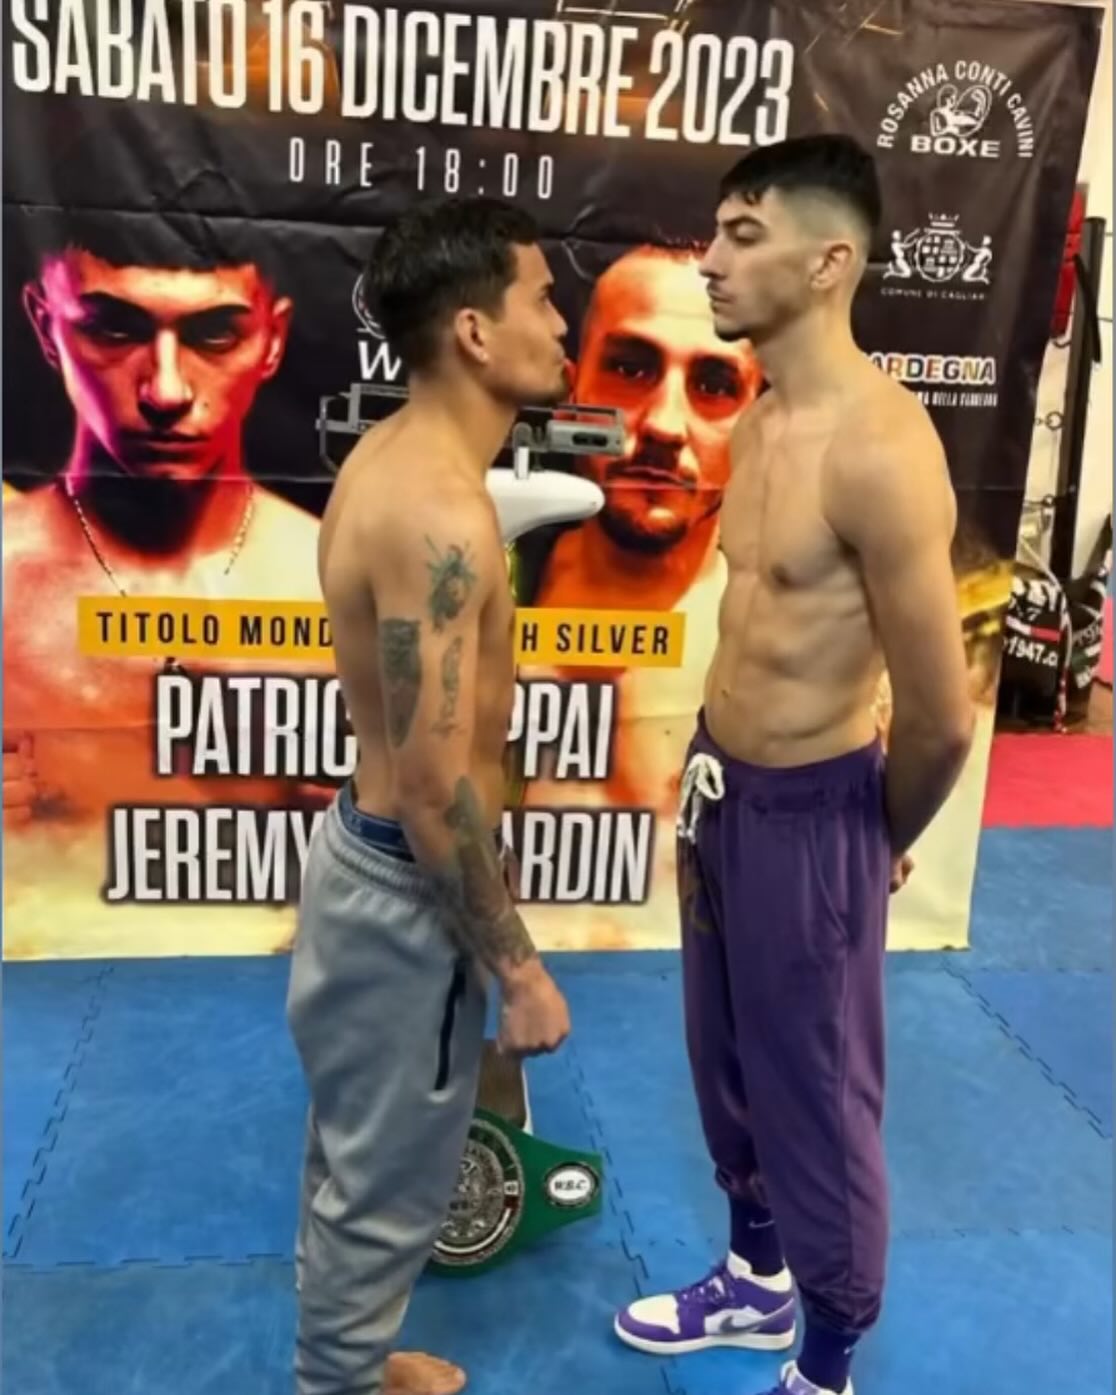 Stasera a Calangianus Cappai vs Martinez per il WBC Silver Youth Piuma 